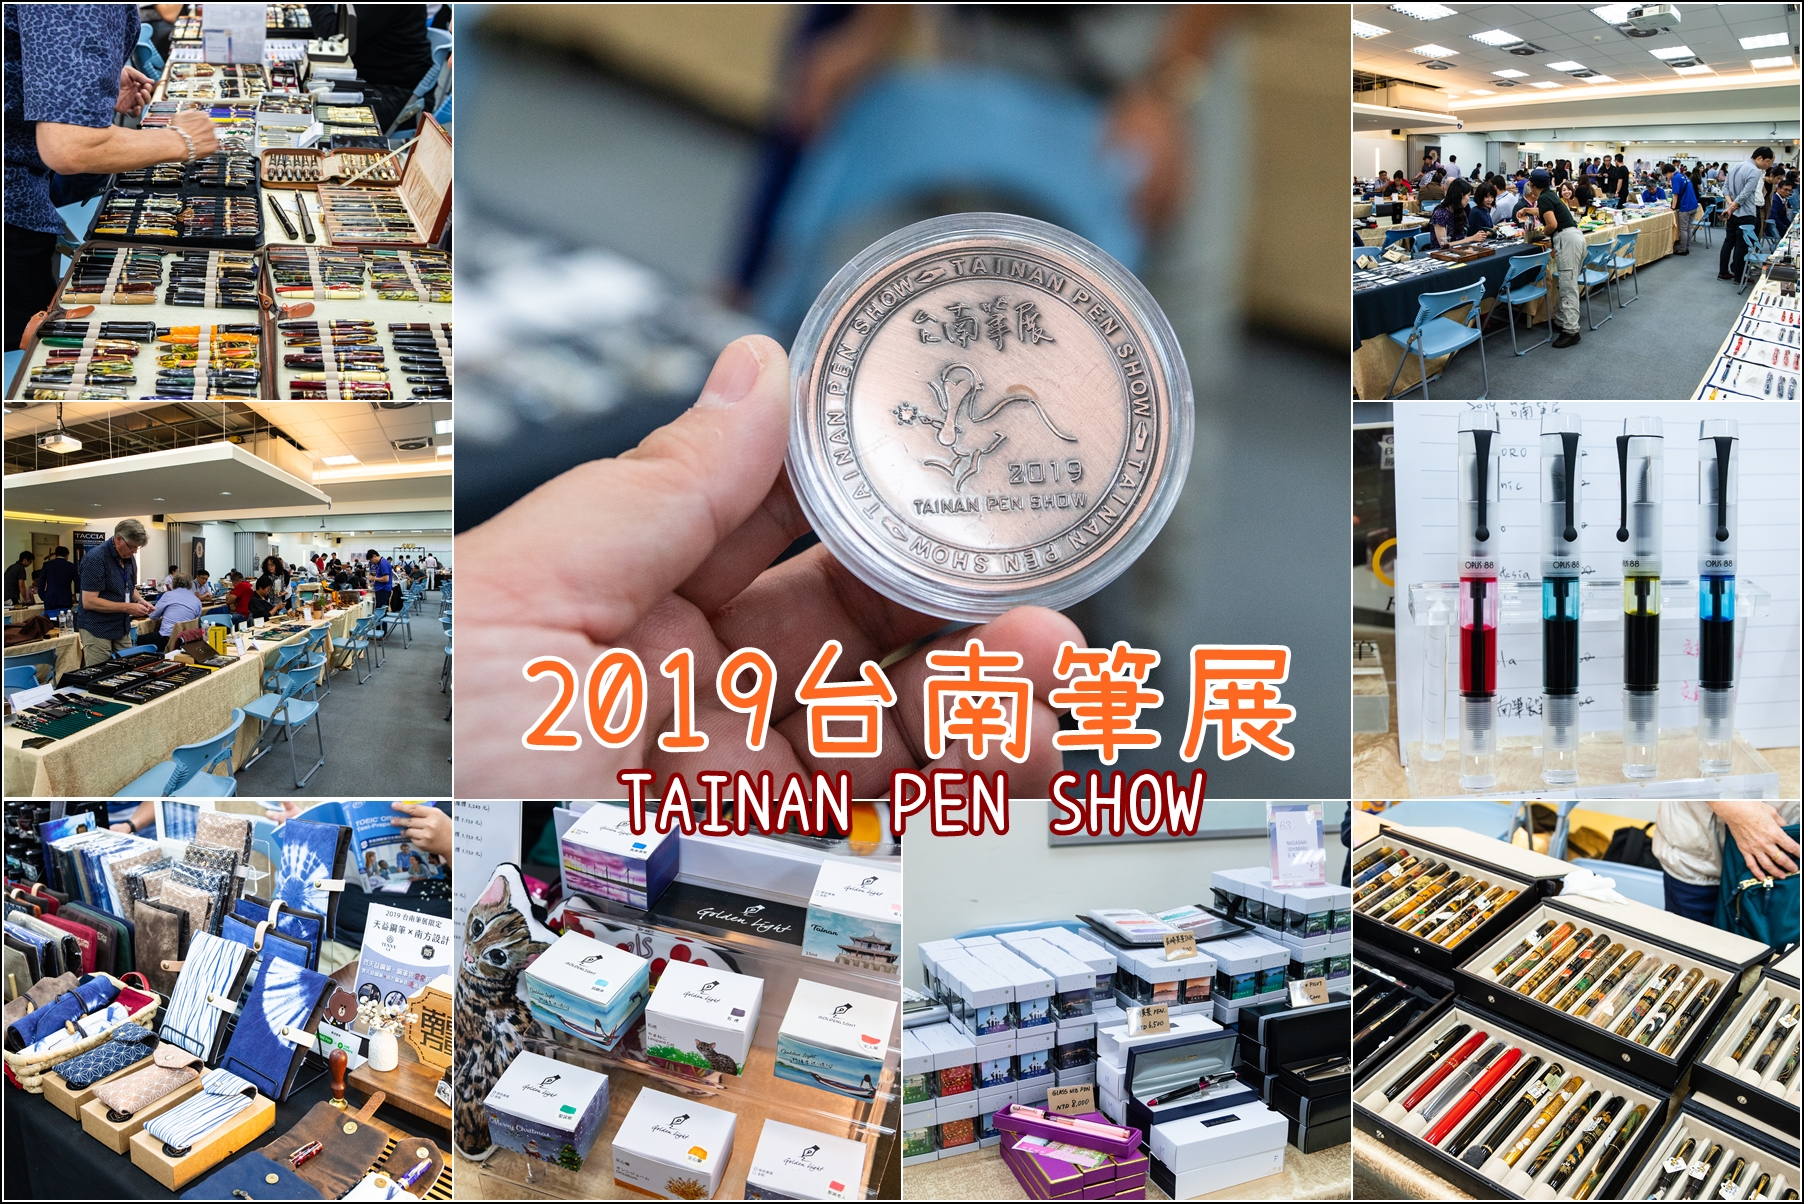 台南．一年一度的鋼筆盛事．2019台南筆展．只有兩天，錯過請等明年．請期待2020-10/17~10/18的台南筆展